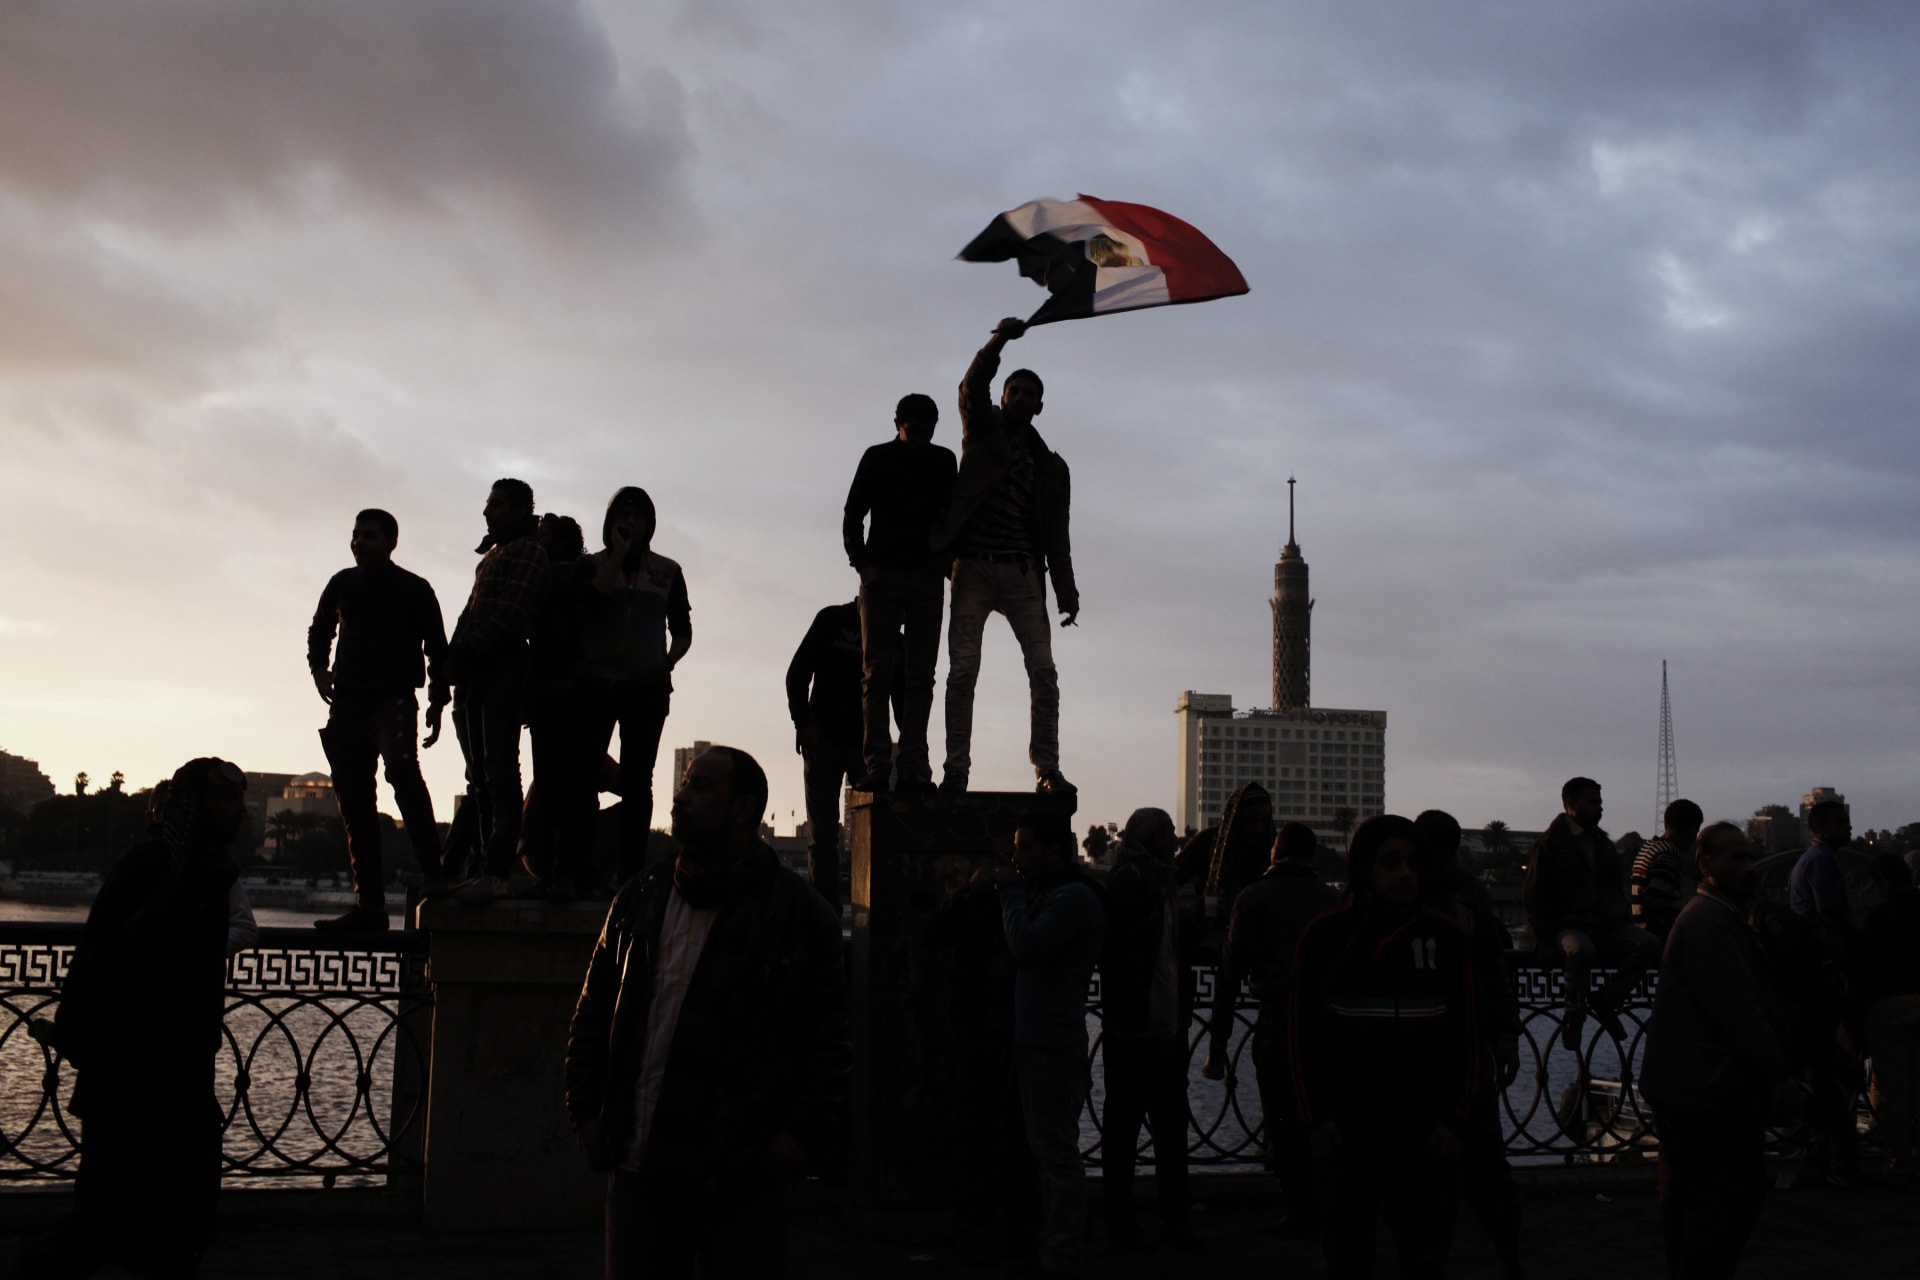 مصطفى كامل السيد يكتب: يجب استخلاص الدروس من إخفاقات ثورة 25 يناير في مصر